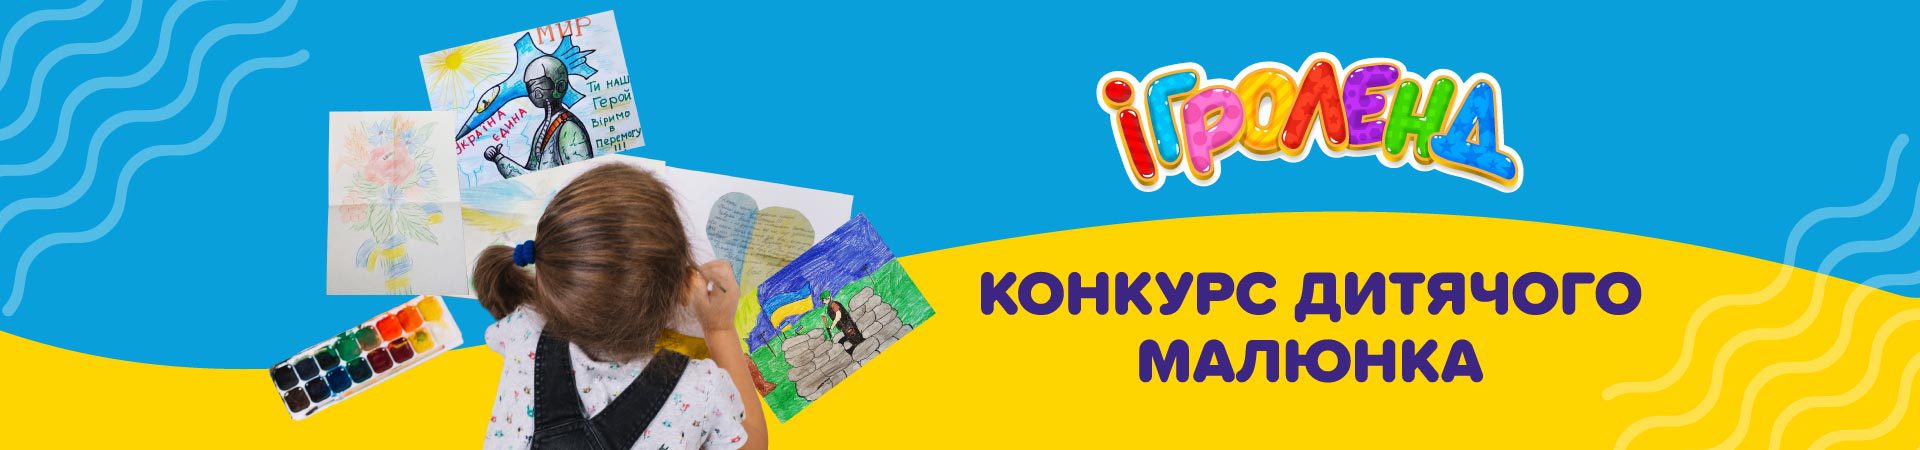 Конкурс дитячого малюнка в Ігроленд ТРЦ Forum Lviv! Ігроленд 1